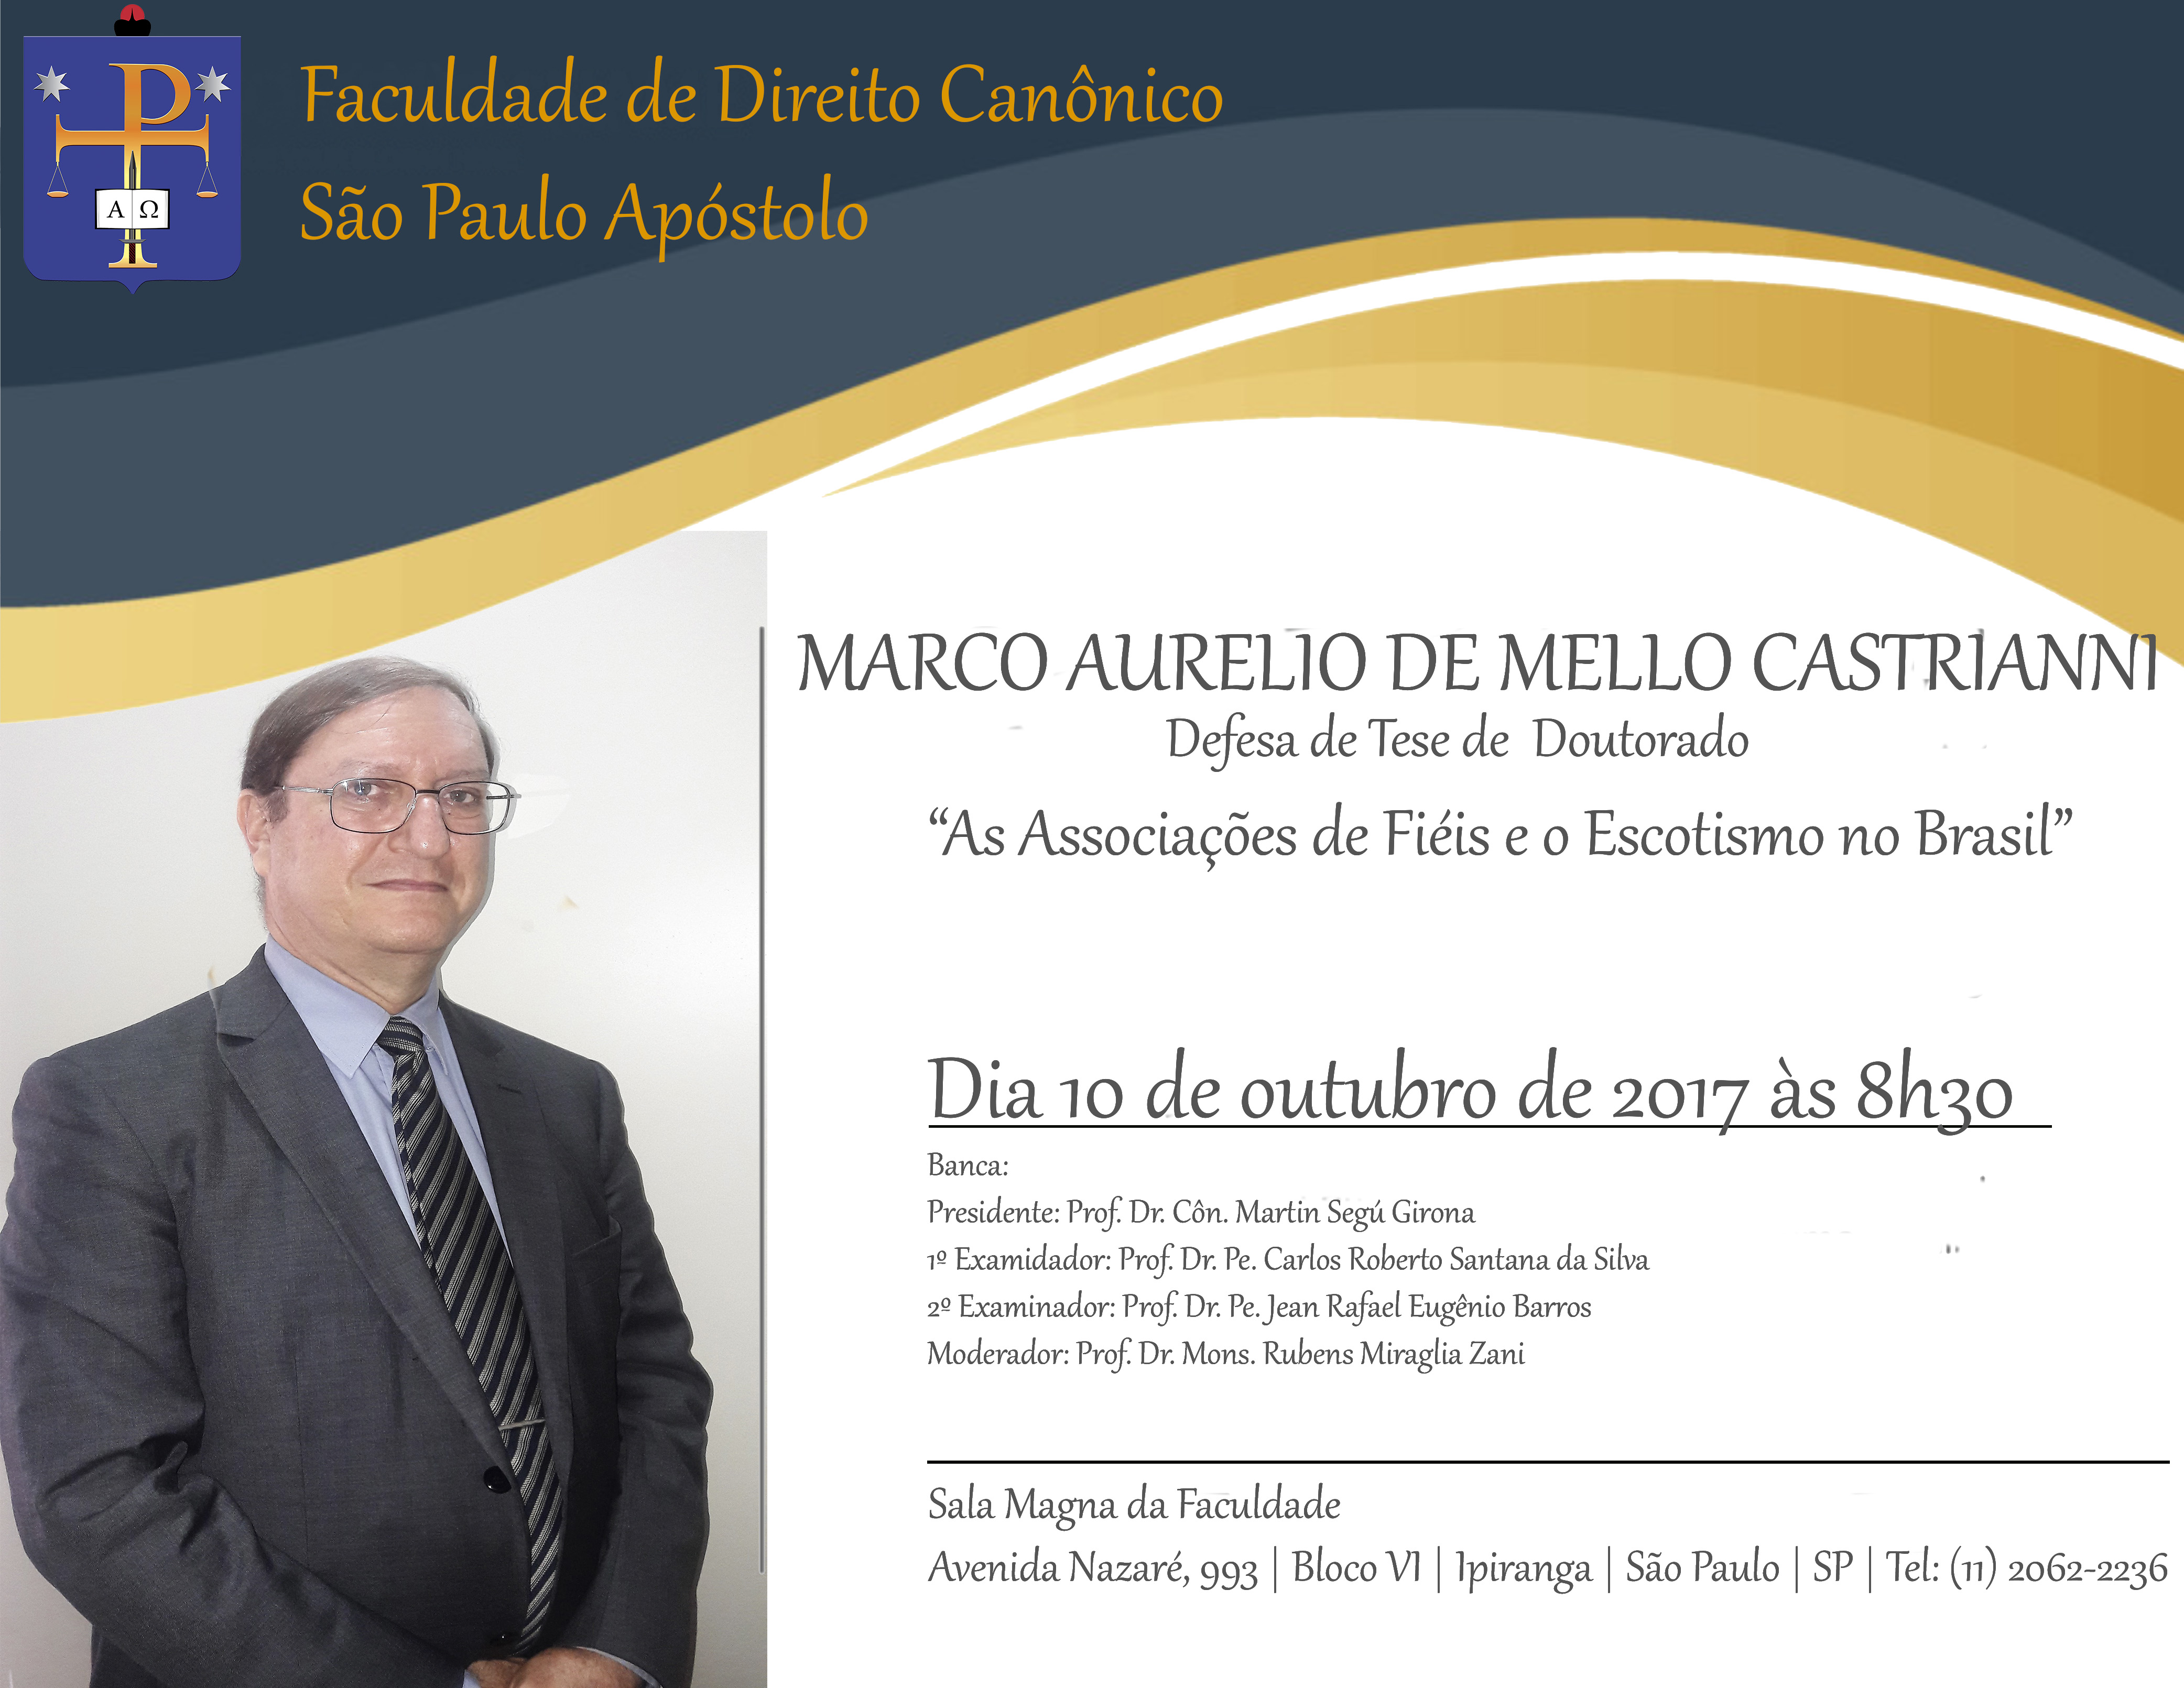 Ex-presidente da Região de SP Castrianni defende tese de doutorado